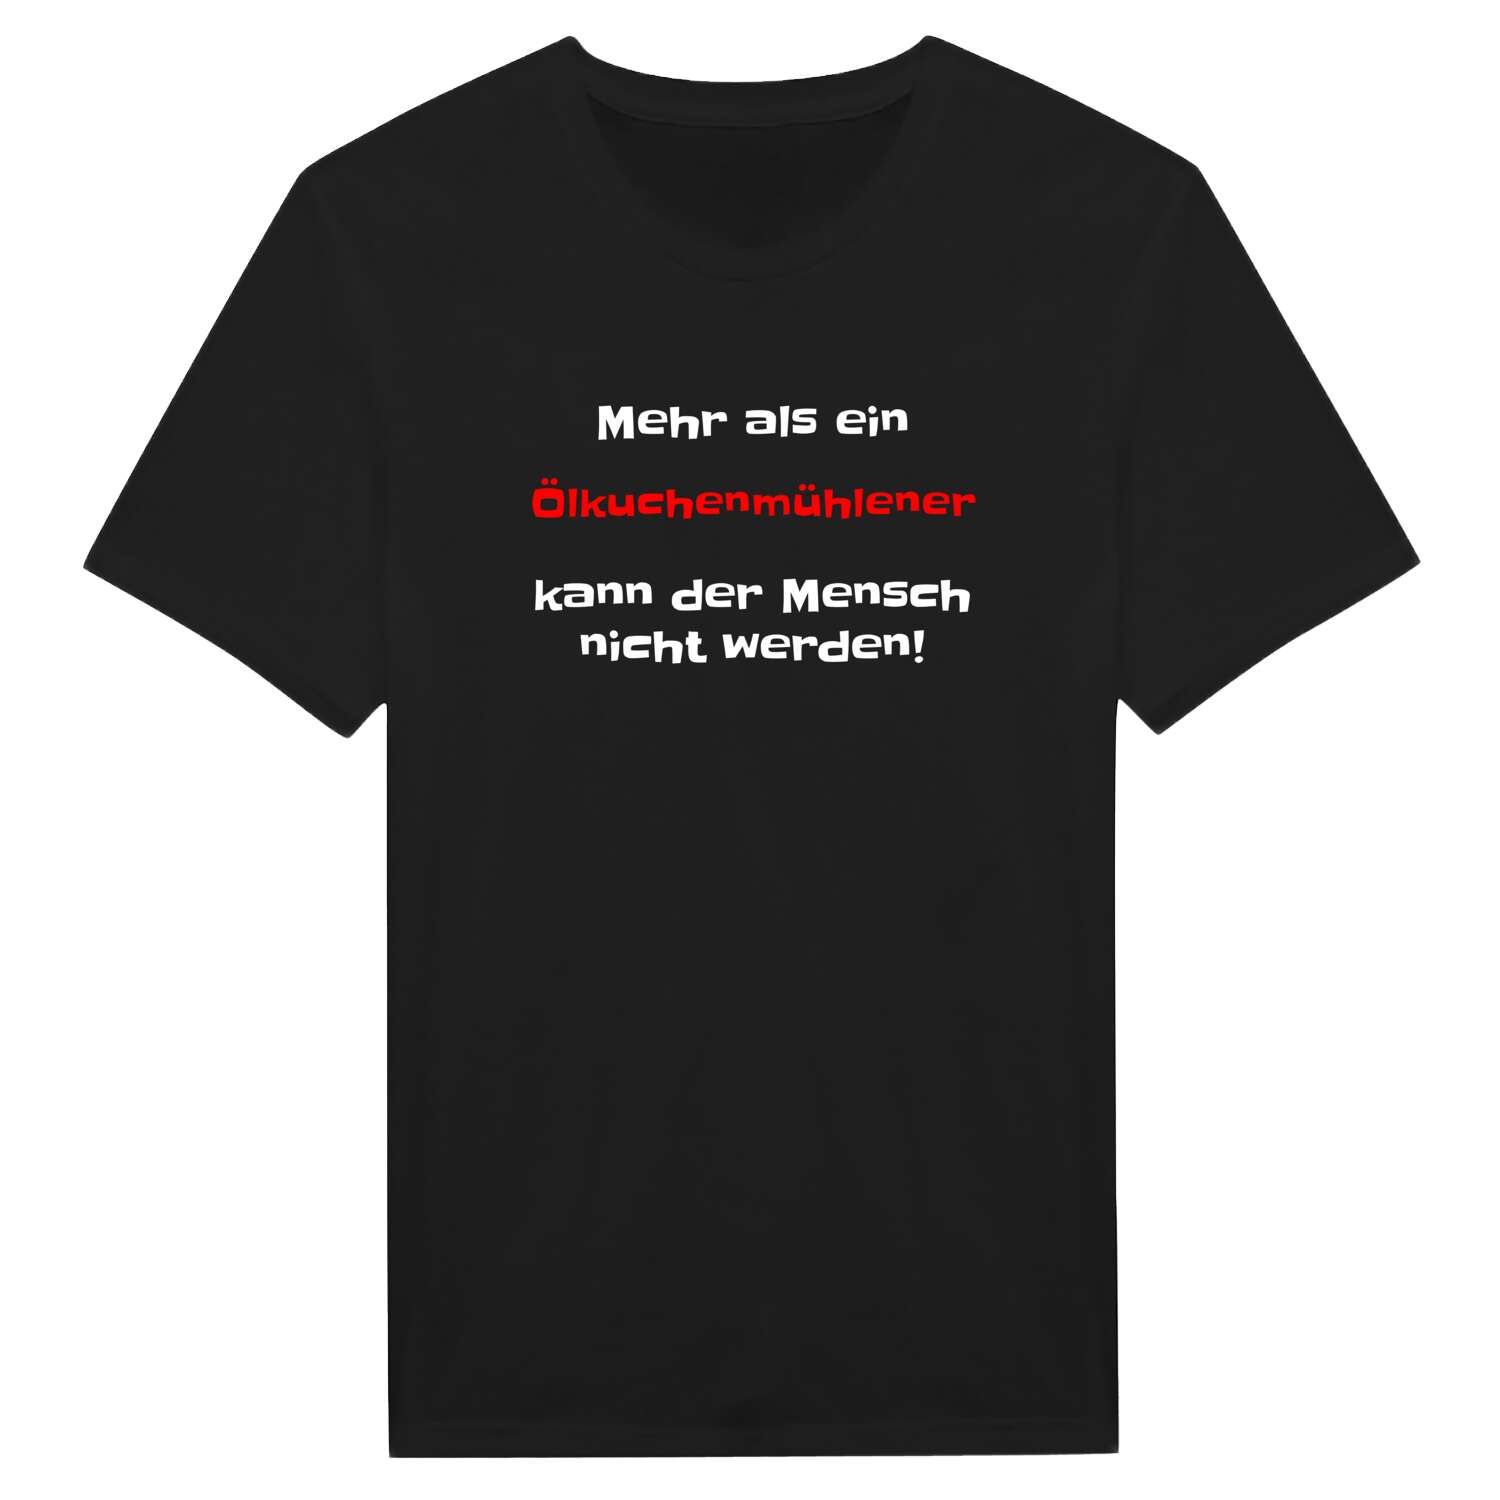 Ölkuchenmühle T-Shirt »Mehr als ein«